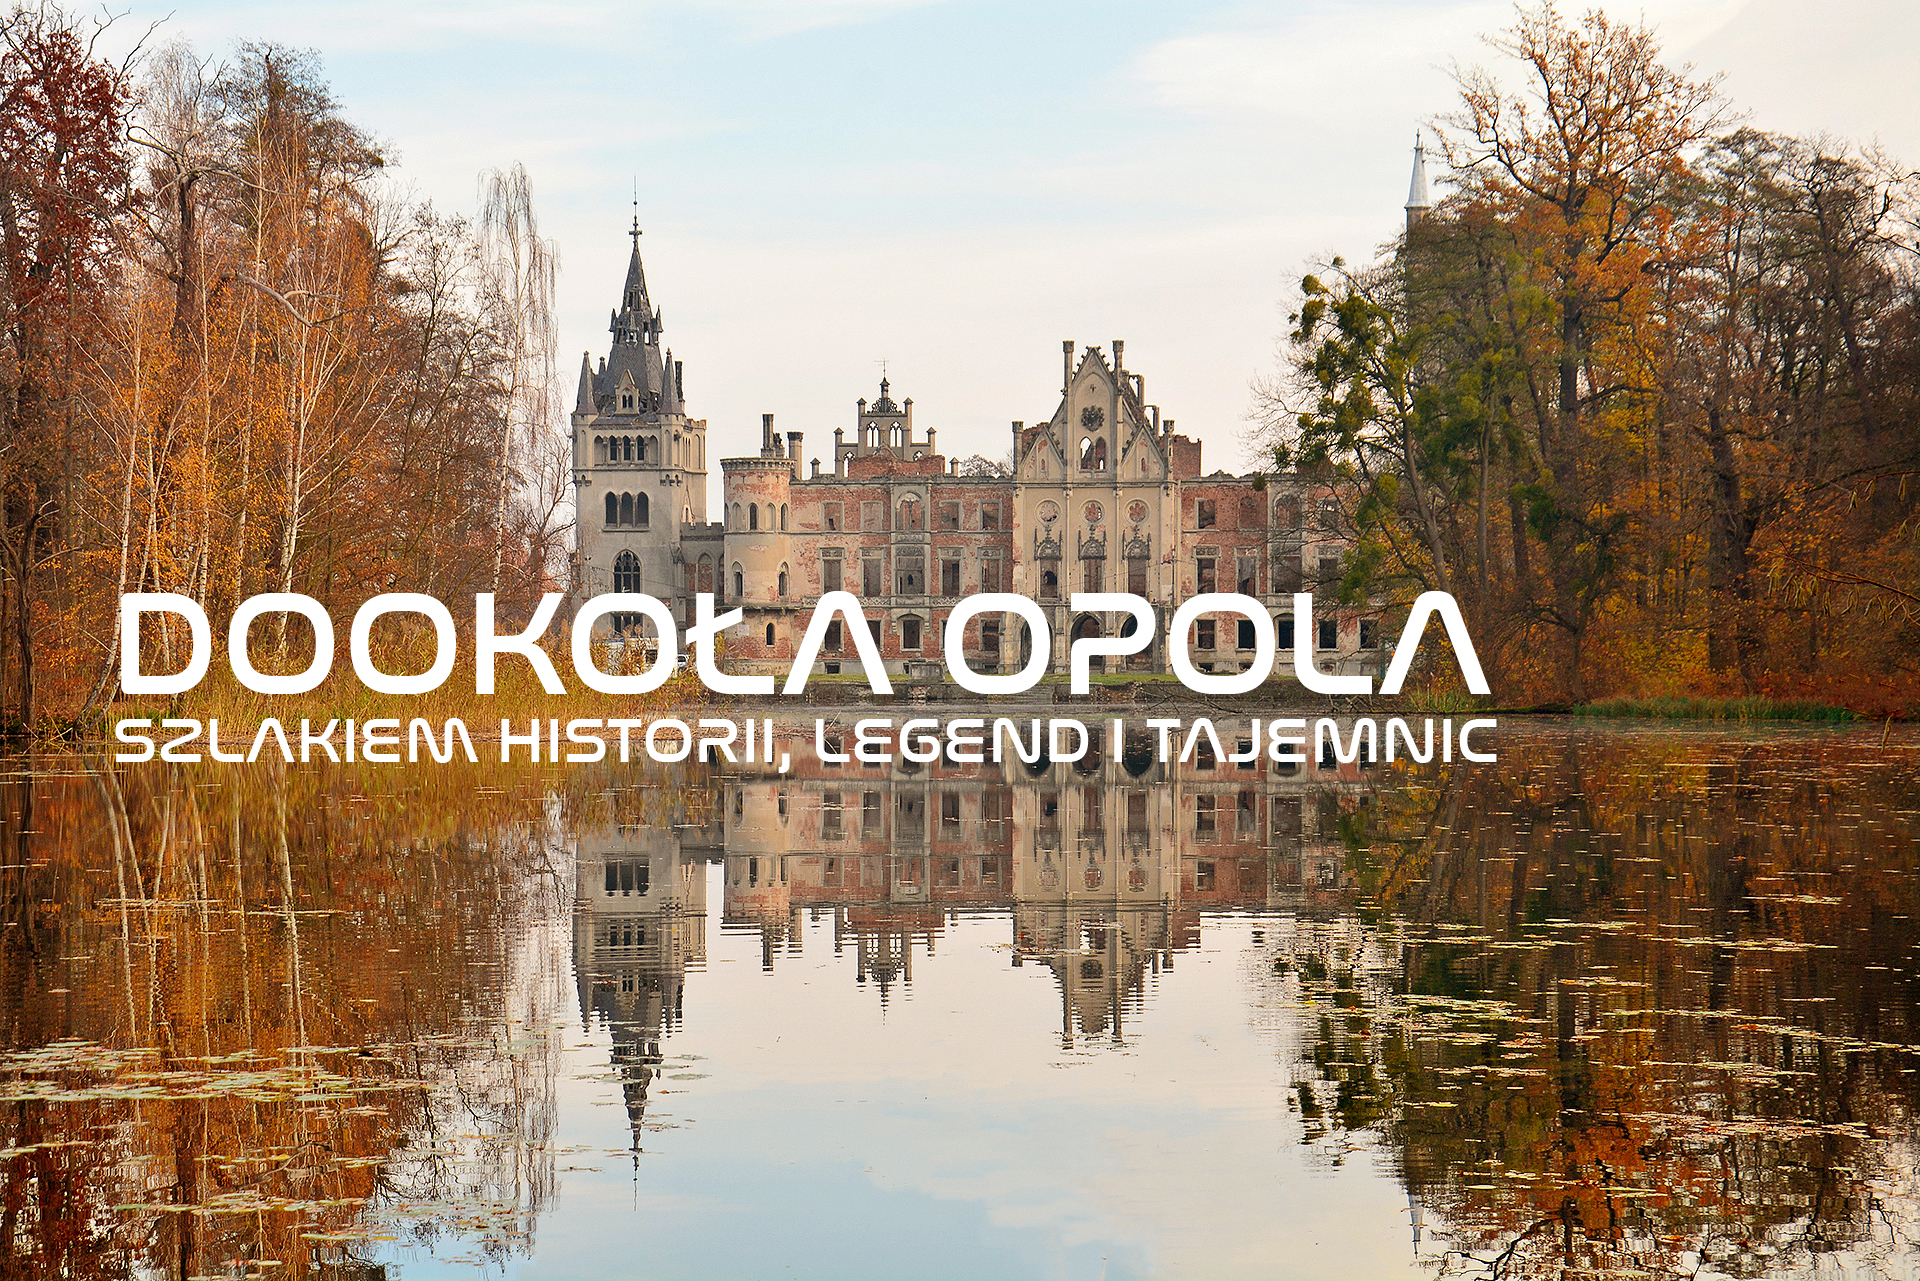 Dookoła Opola szlakiem historii, legend i tajemnic | Atrakcje turystyczne Opolszczyzny na interaktywnych panoramach 360°